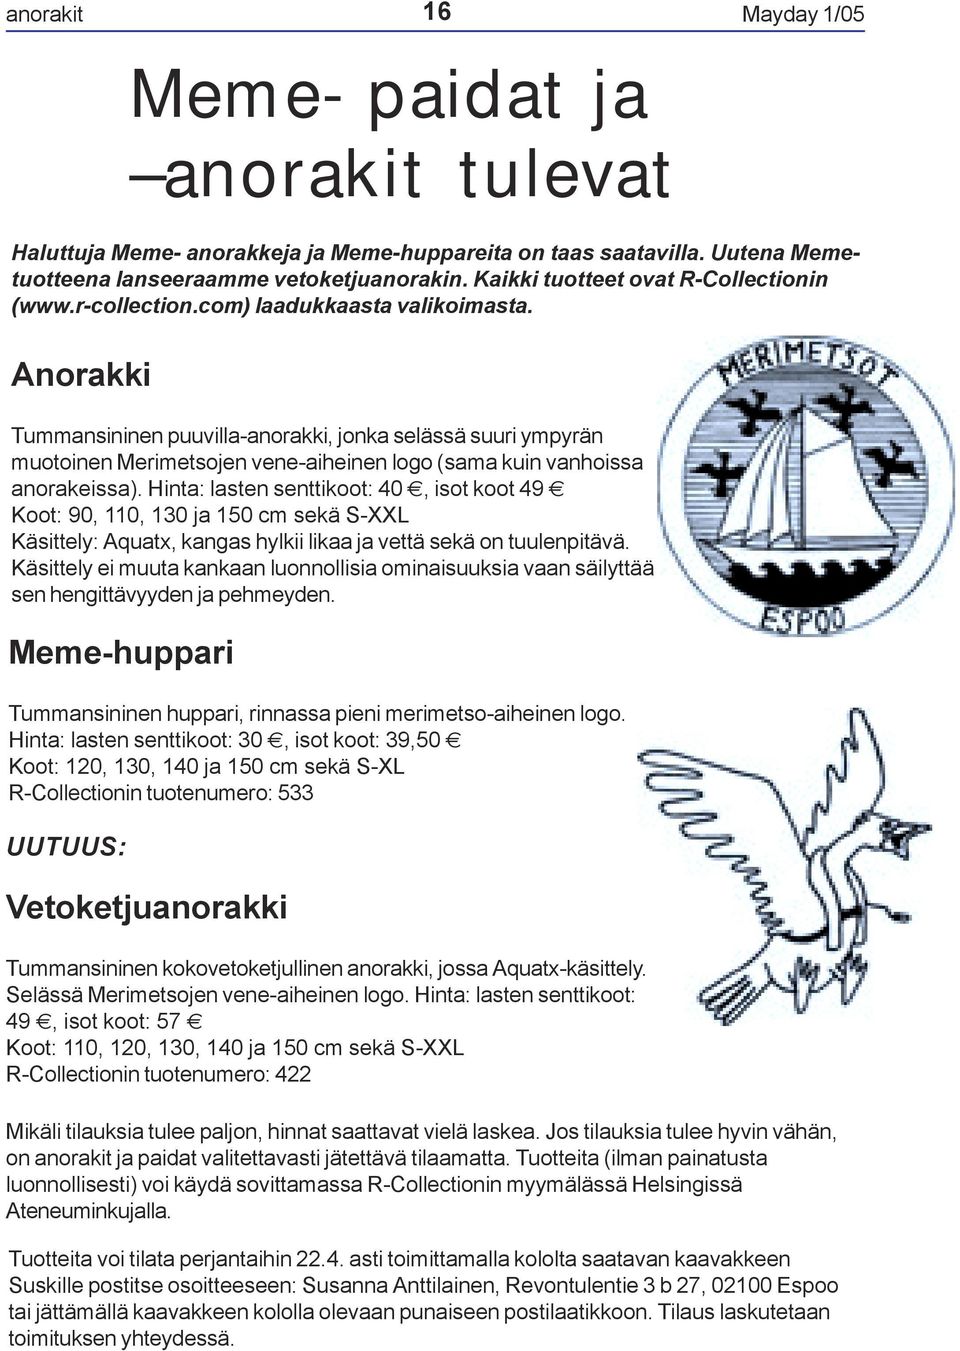 Anorakki Tummansininen puuvilla-anorakki, jonka selässä suuri ympyrän muotoinen Merimetsojen vene-aiheinen logo (sama kuin vanhoissa anorakeissa).